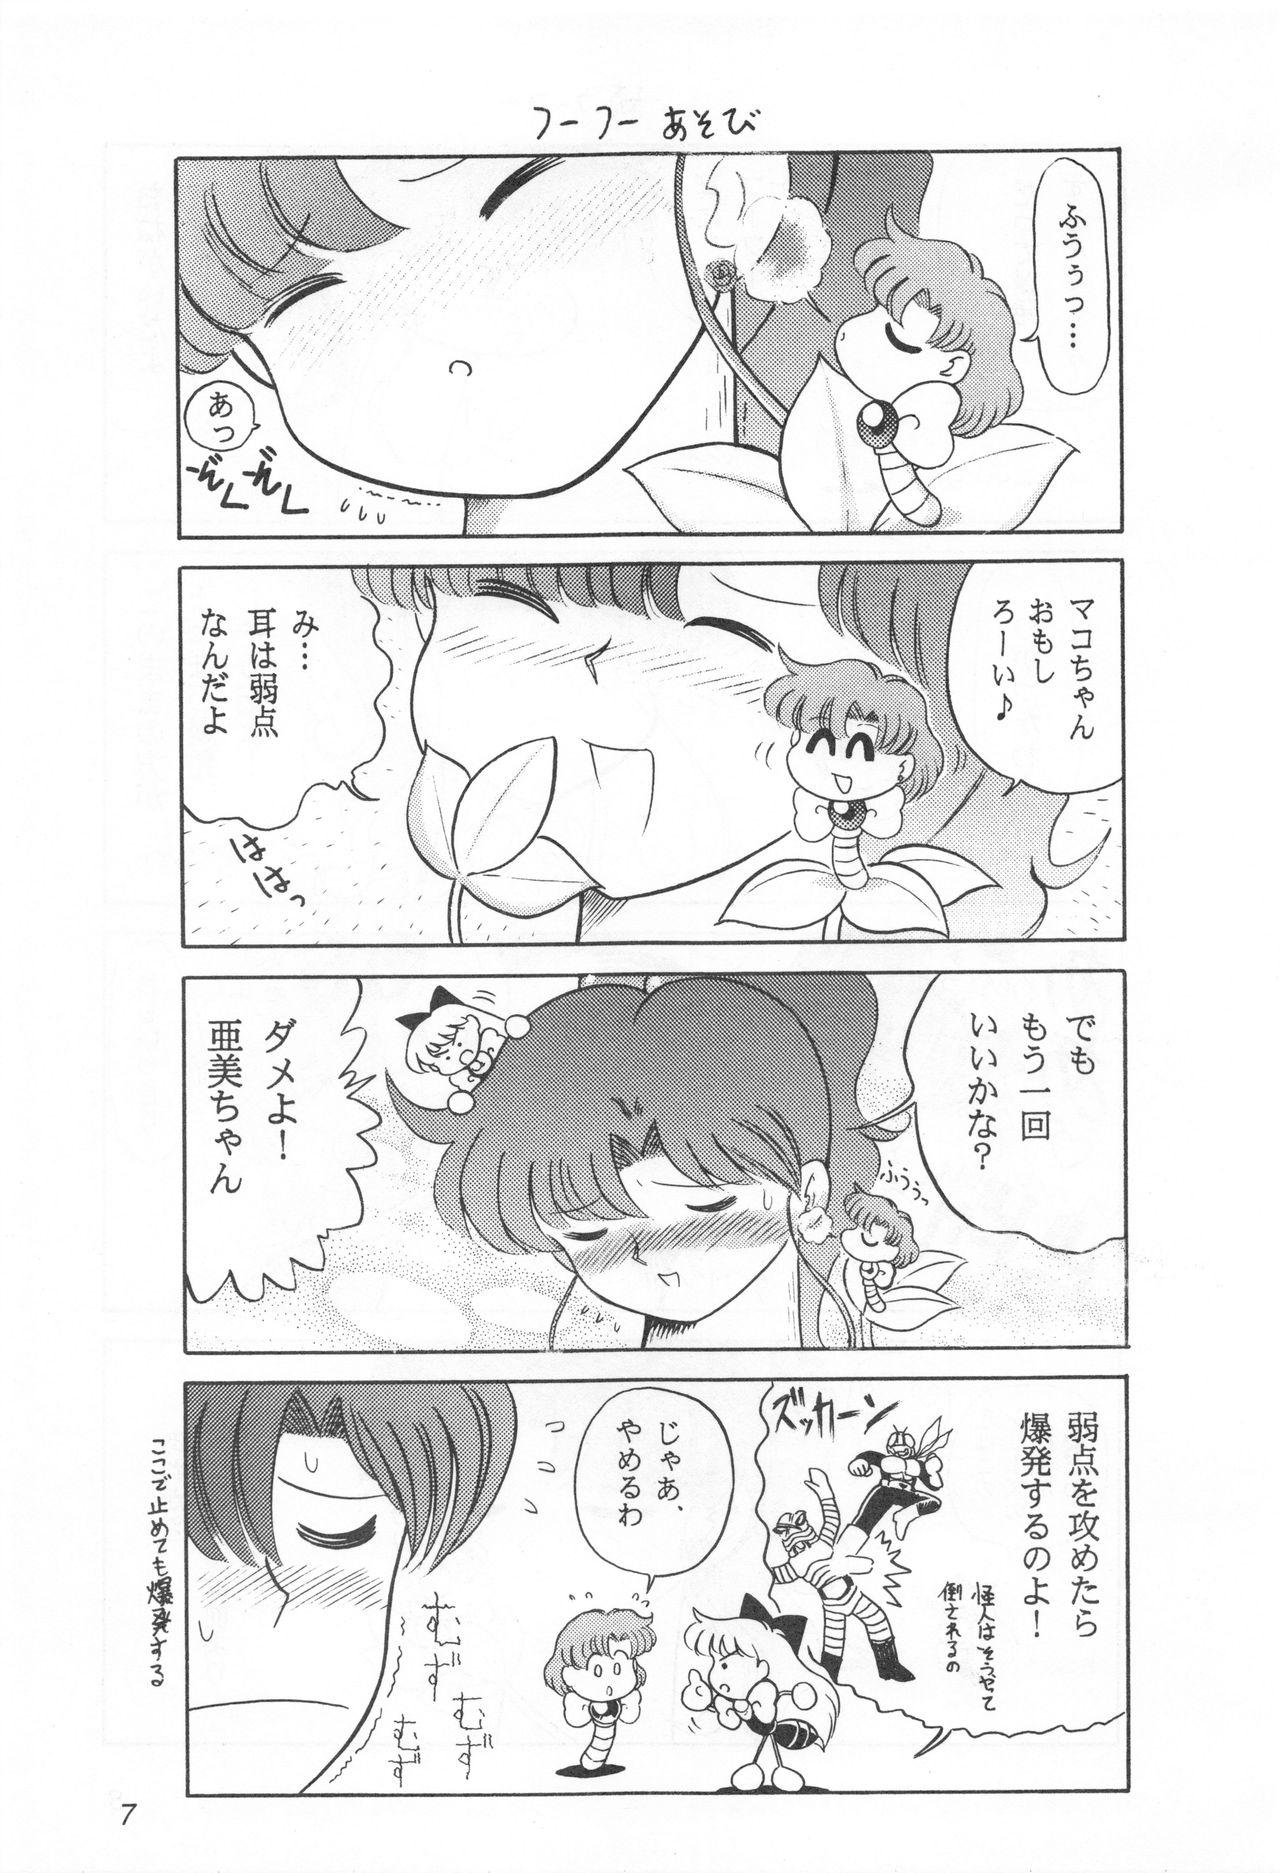 Masturbate Mimizu no Ami-chan Vol. 2 - Sailor moon Ecuador - Page 6